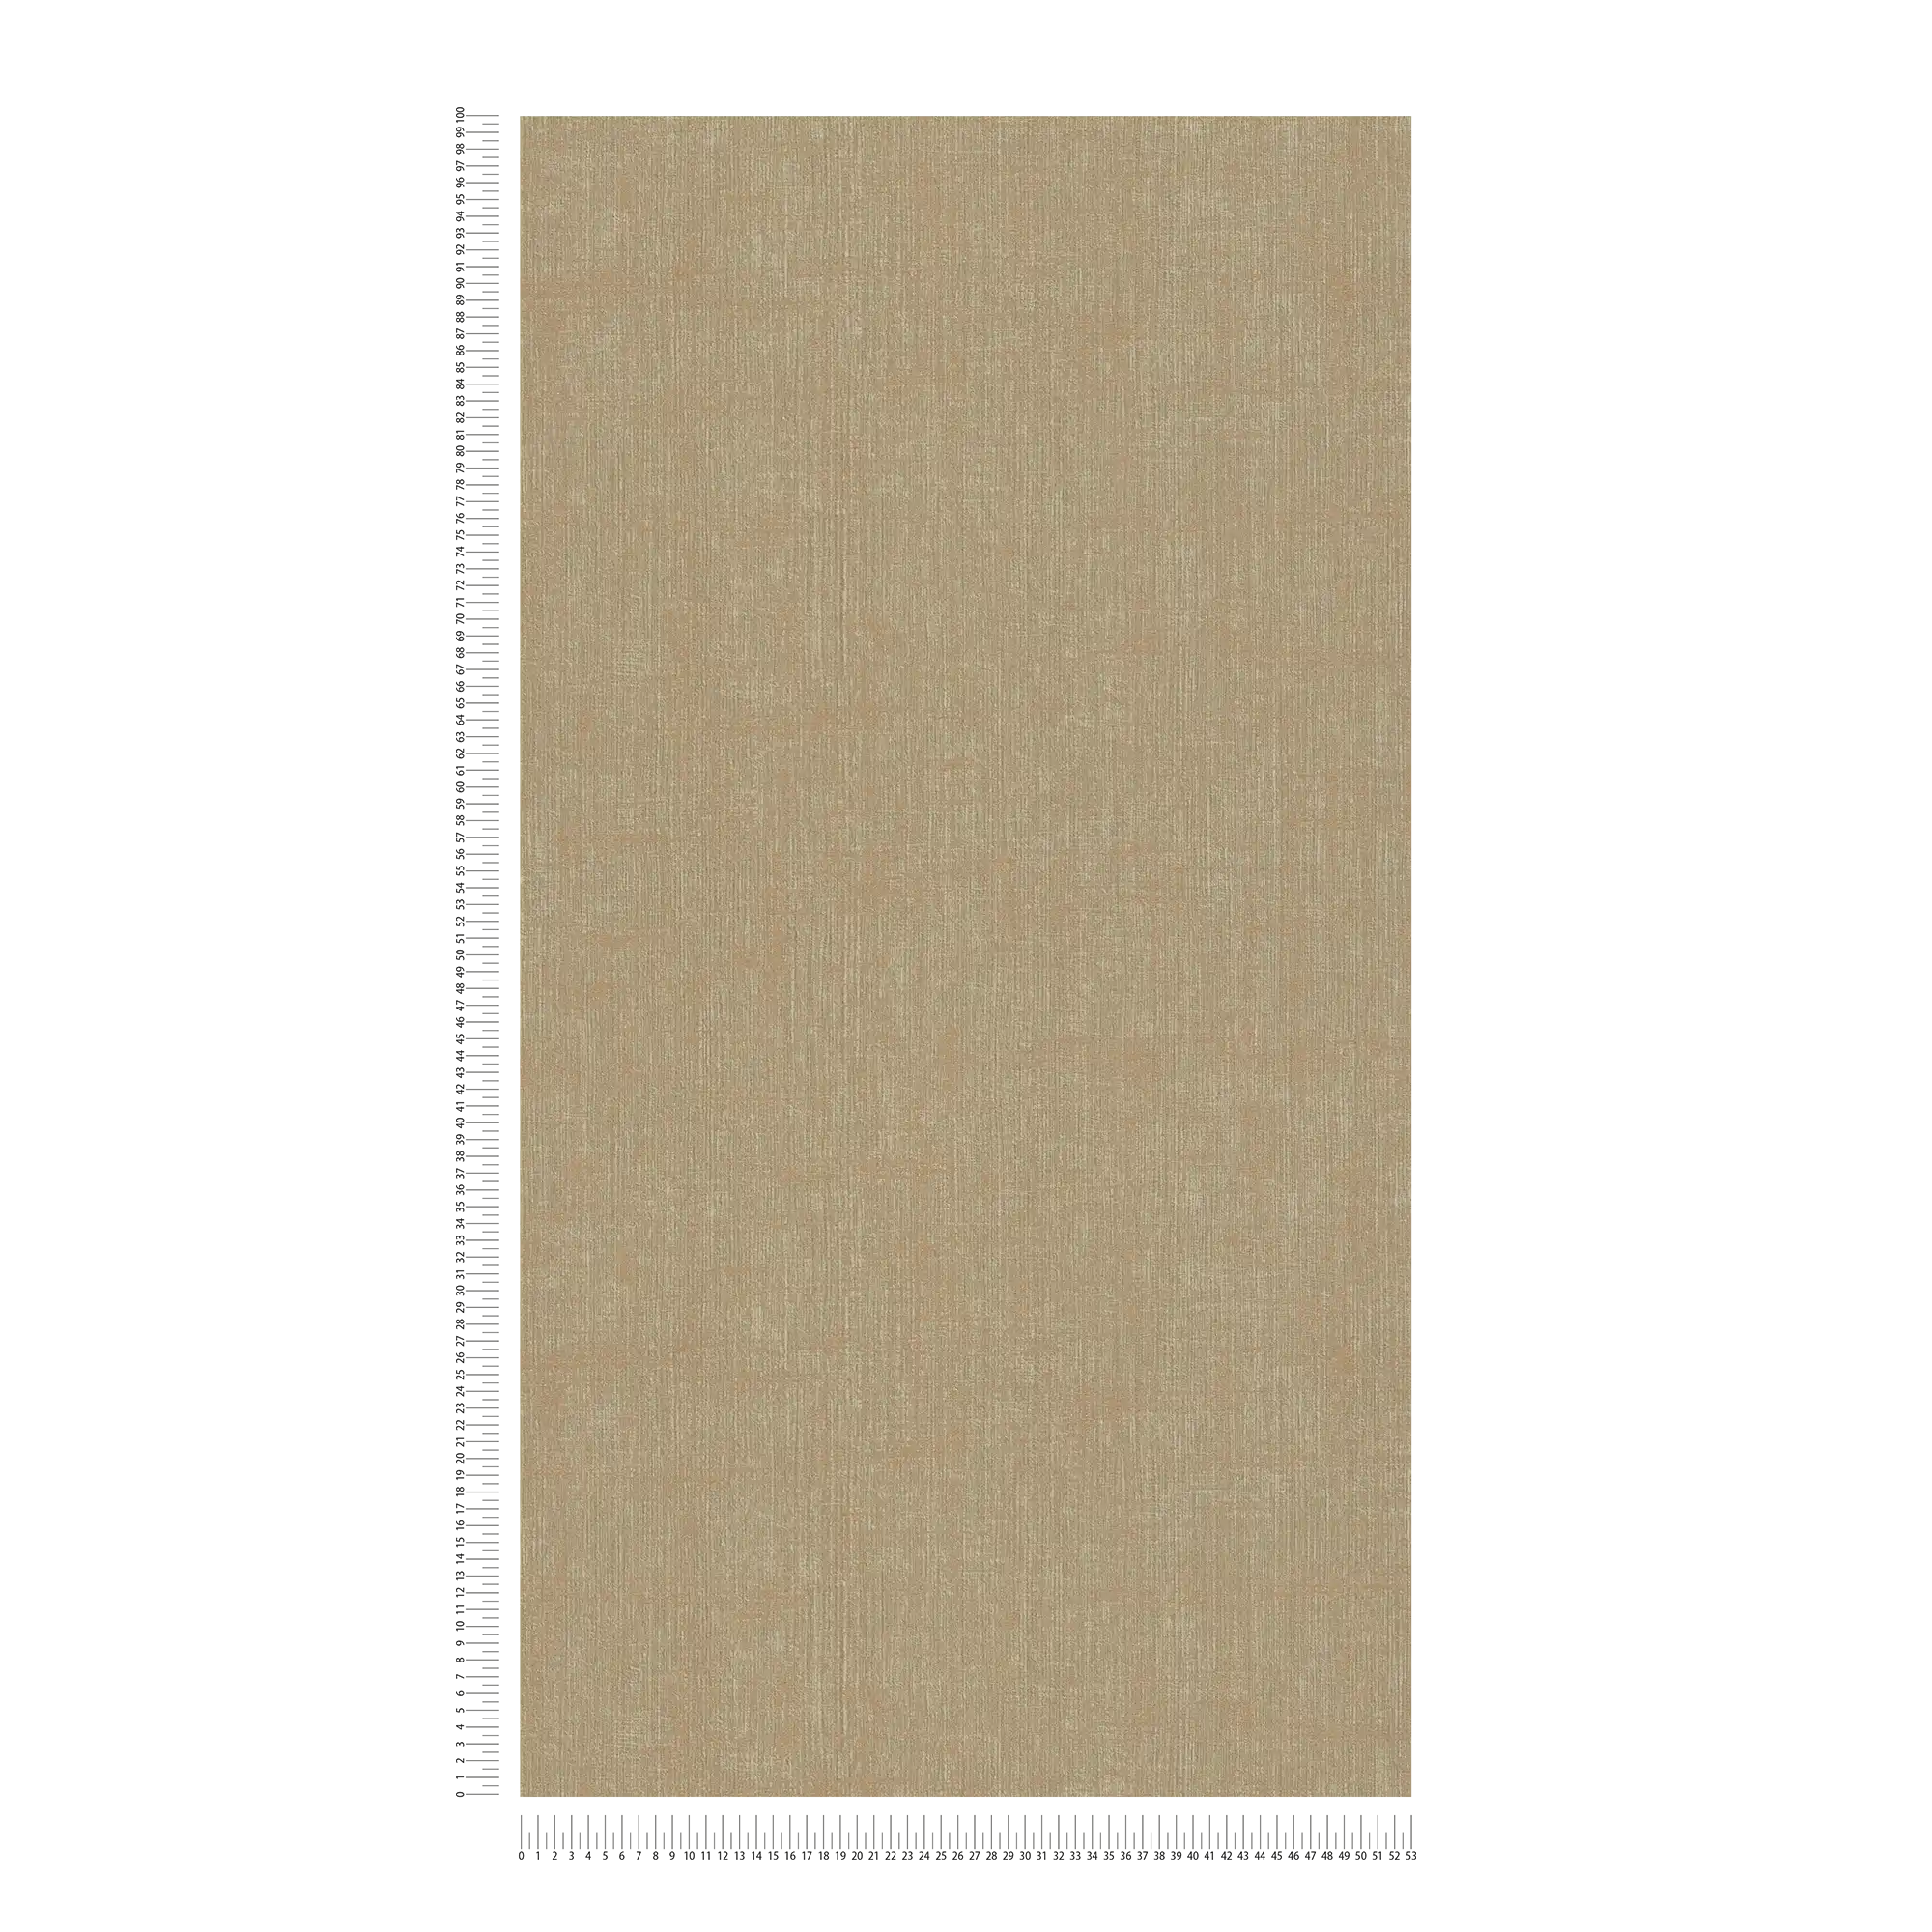             Brown wallpaper, coarse linen look
        